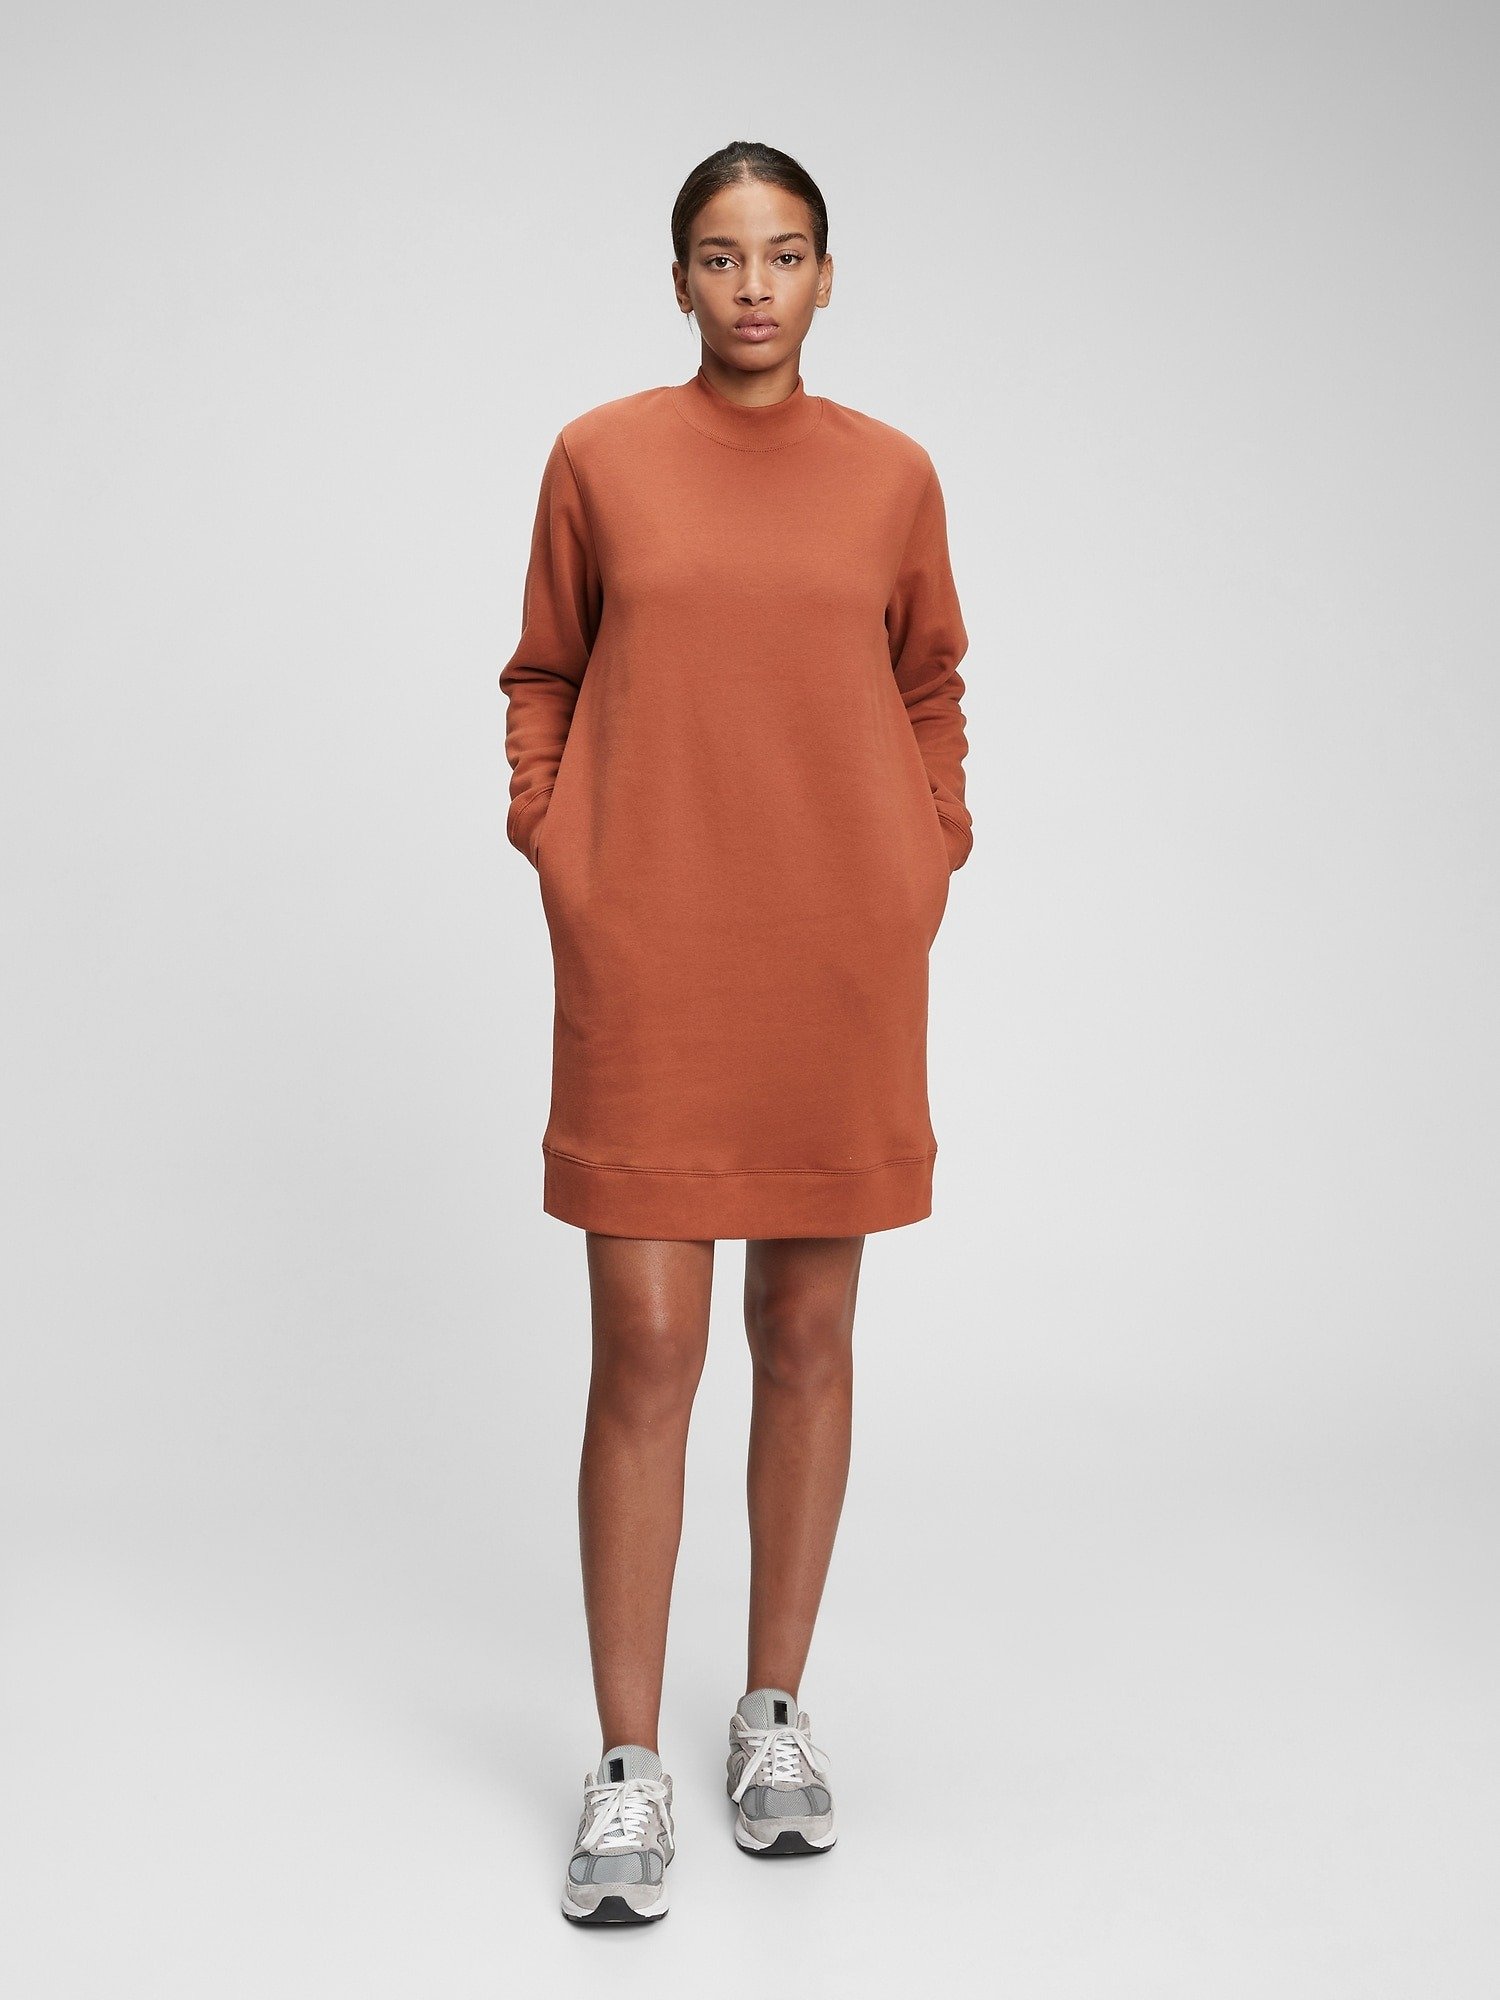 Sweatshirt Elbise product image